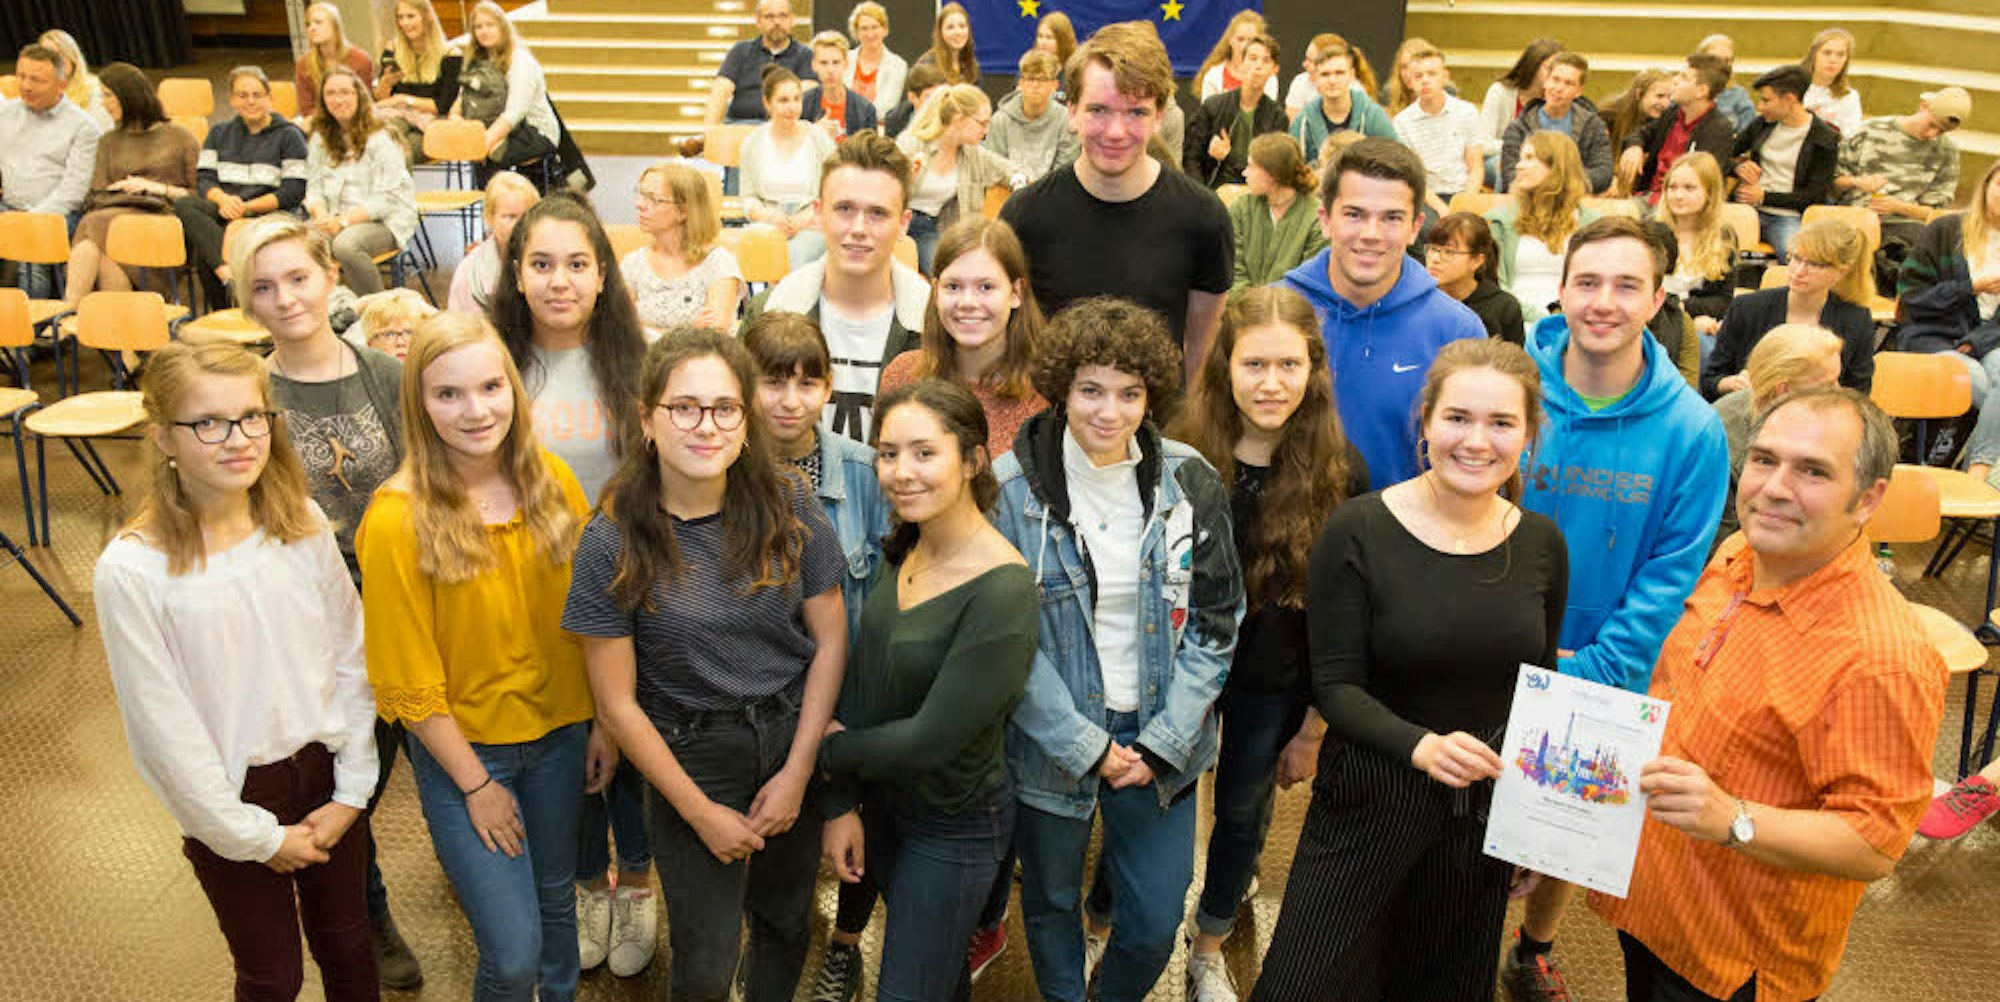 Schüler aus dem Rhein-Sieg-Kreis und Bonn wurden für ihre kreative Auseinandersetzung mit der Kultur in Europa ausgezeichnet. Lehrer Christian Schneider (r.) koordinierte den Wettbewerb im Regierungsbezirk Köln.